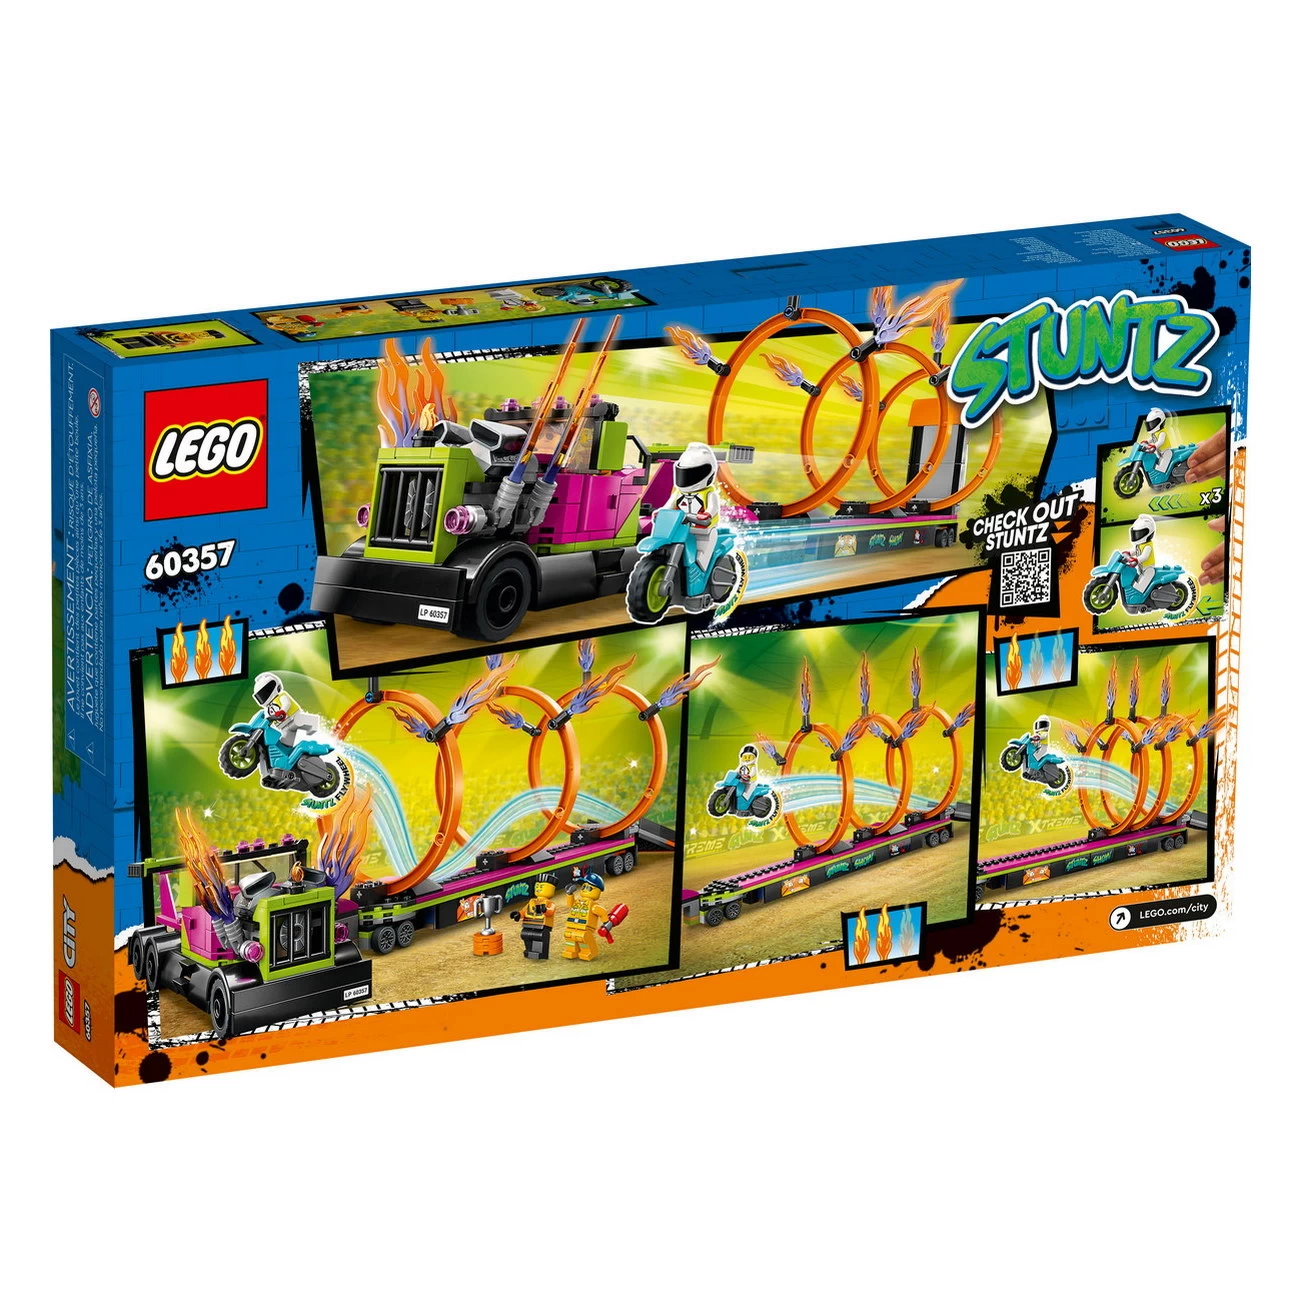 LEGO City 60357 - Stunttruck mit Feuerreifen-Challenge